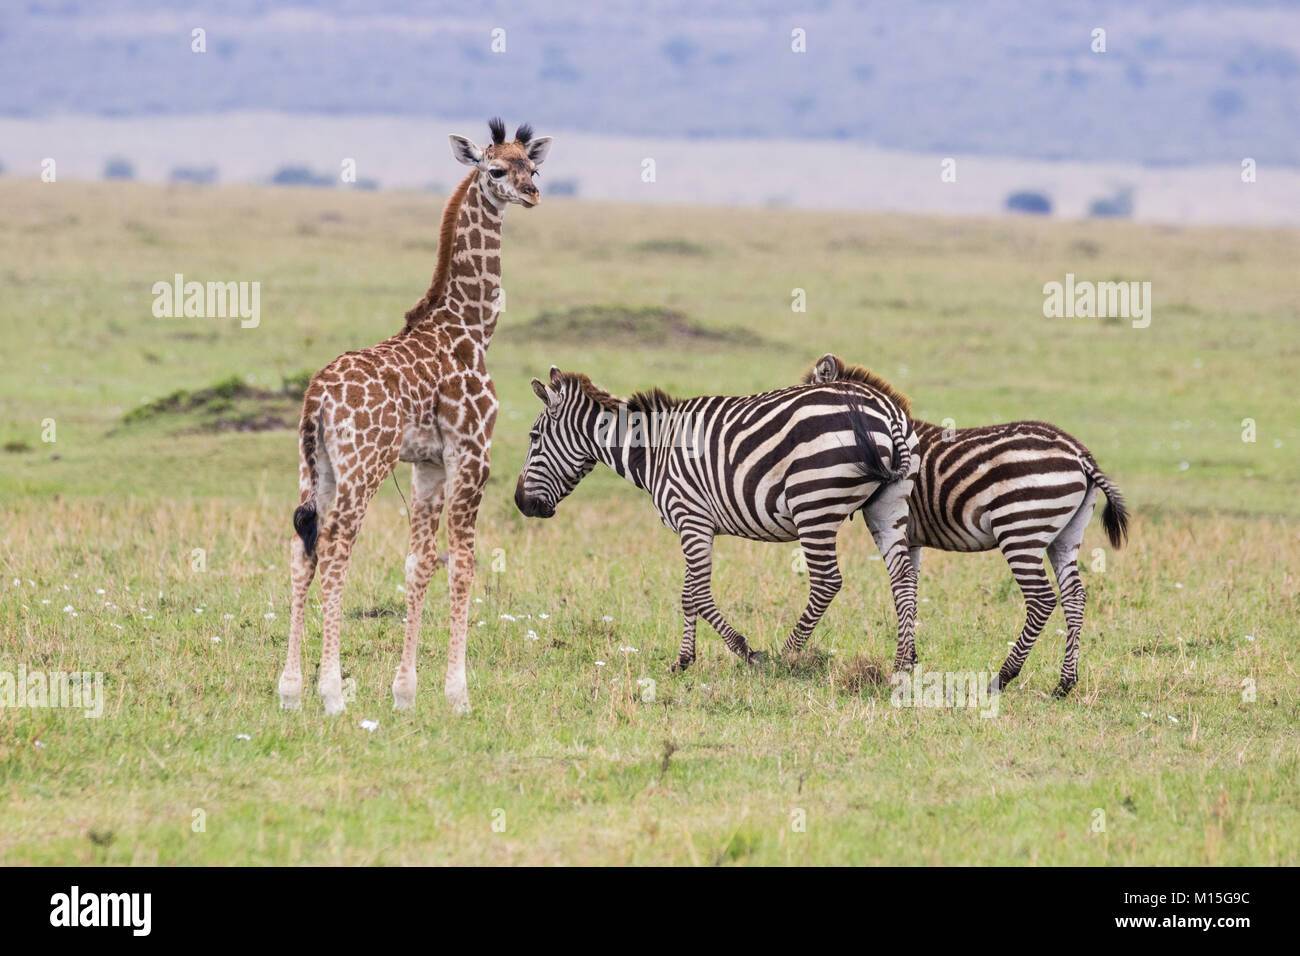 Neugeborenen giraffe steht unter einigen unbekannten Nachbarn. Stockfoto